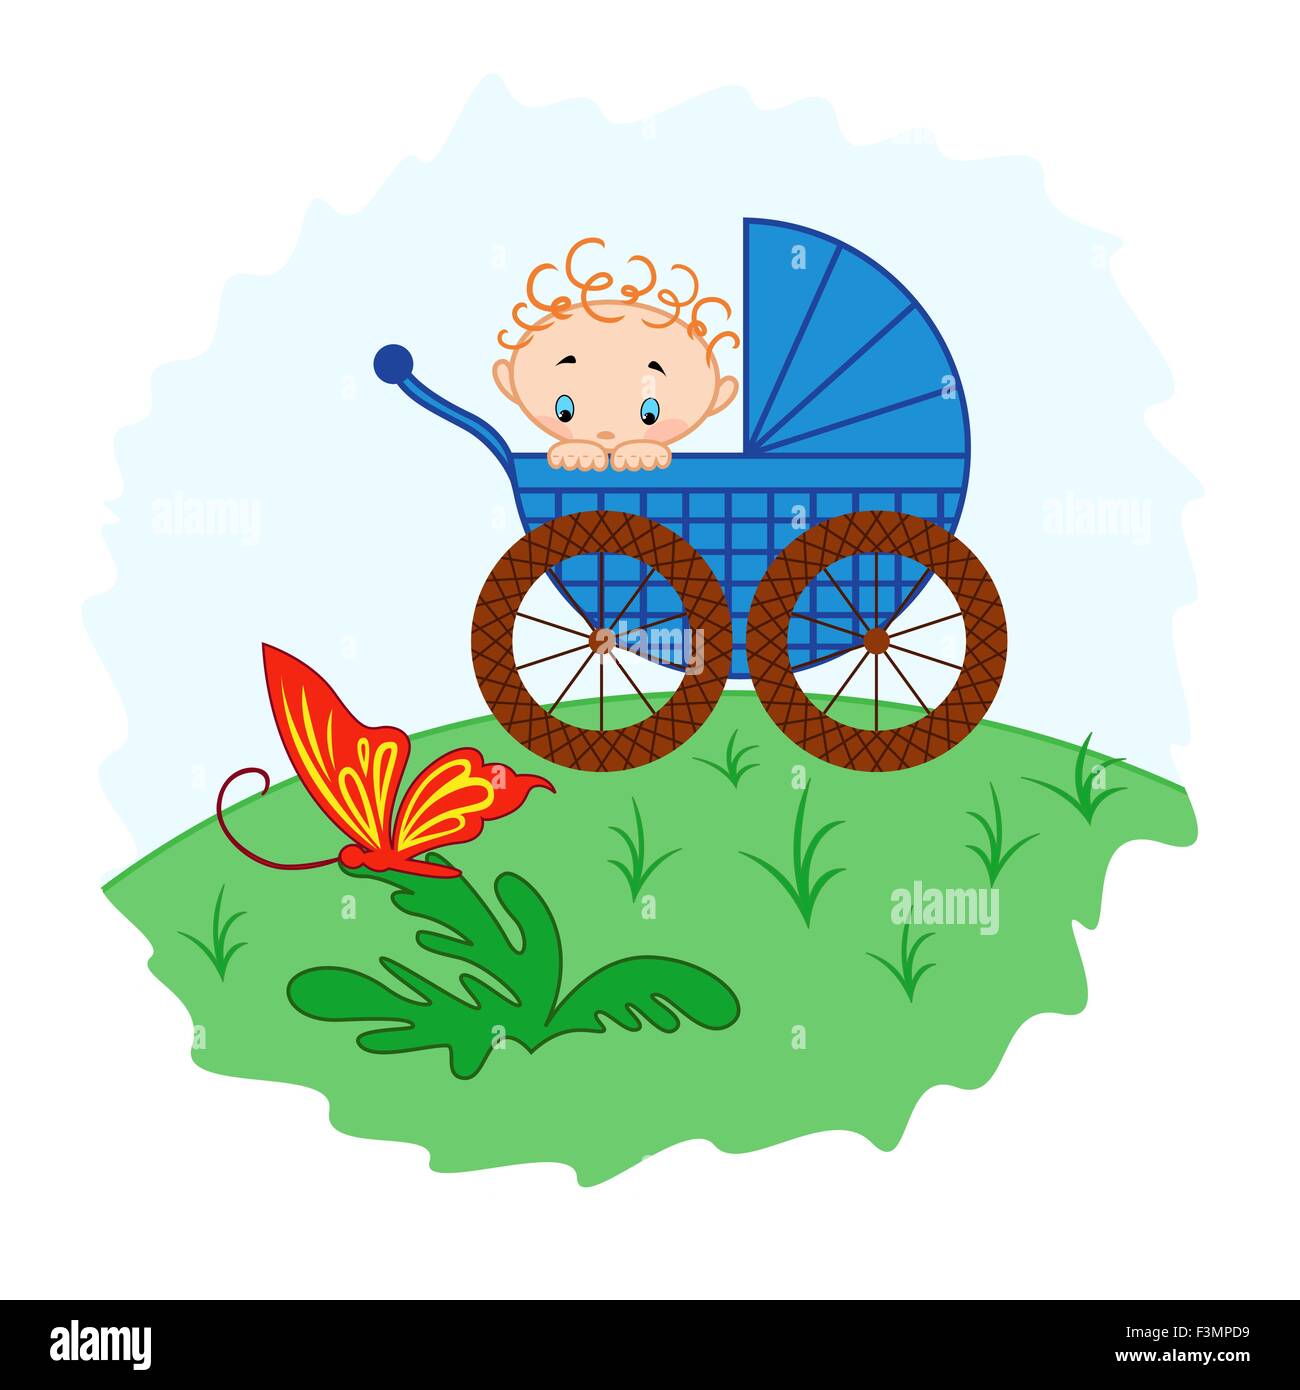 Baby Junge aus Kinderwagen gerade einen Schmetterling, Handzeichnung Vektor-illustration Stock Vektor